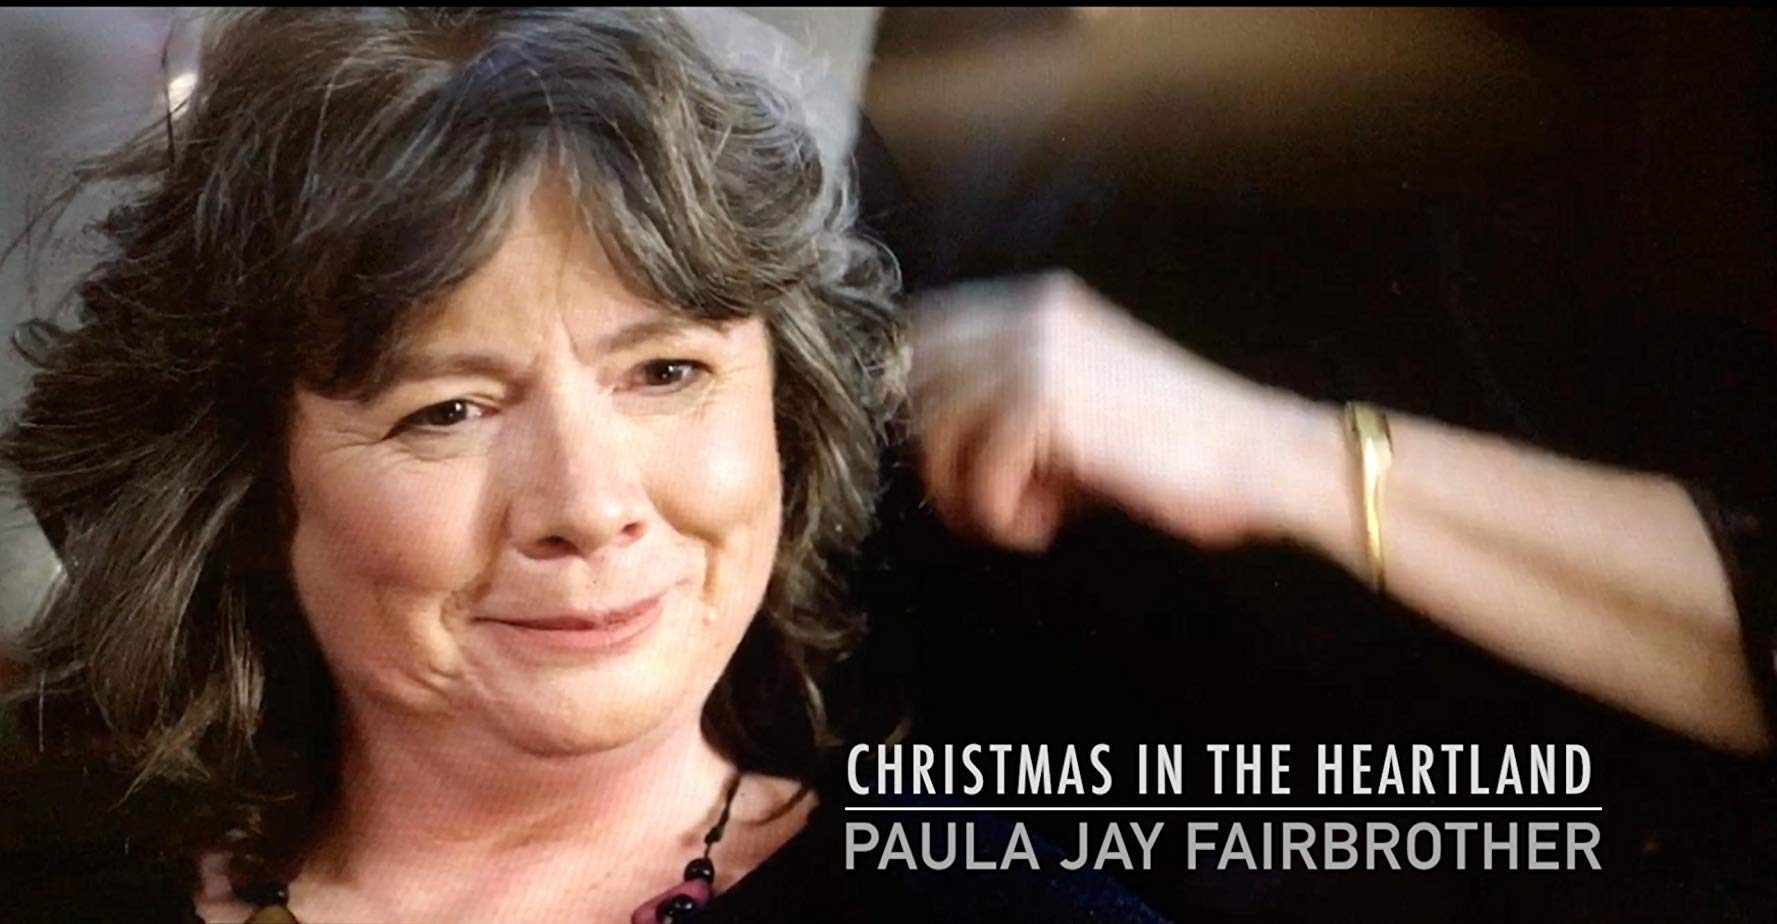 Paula Jay Fairbrother